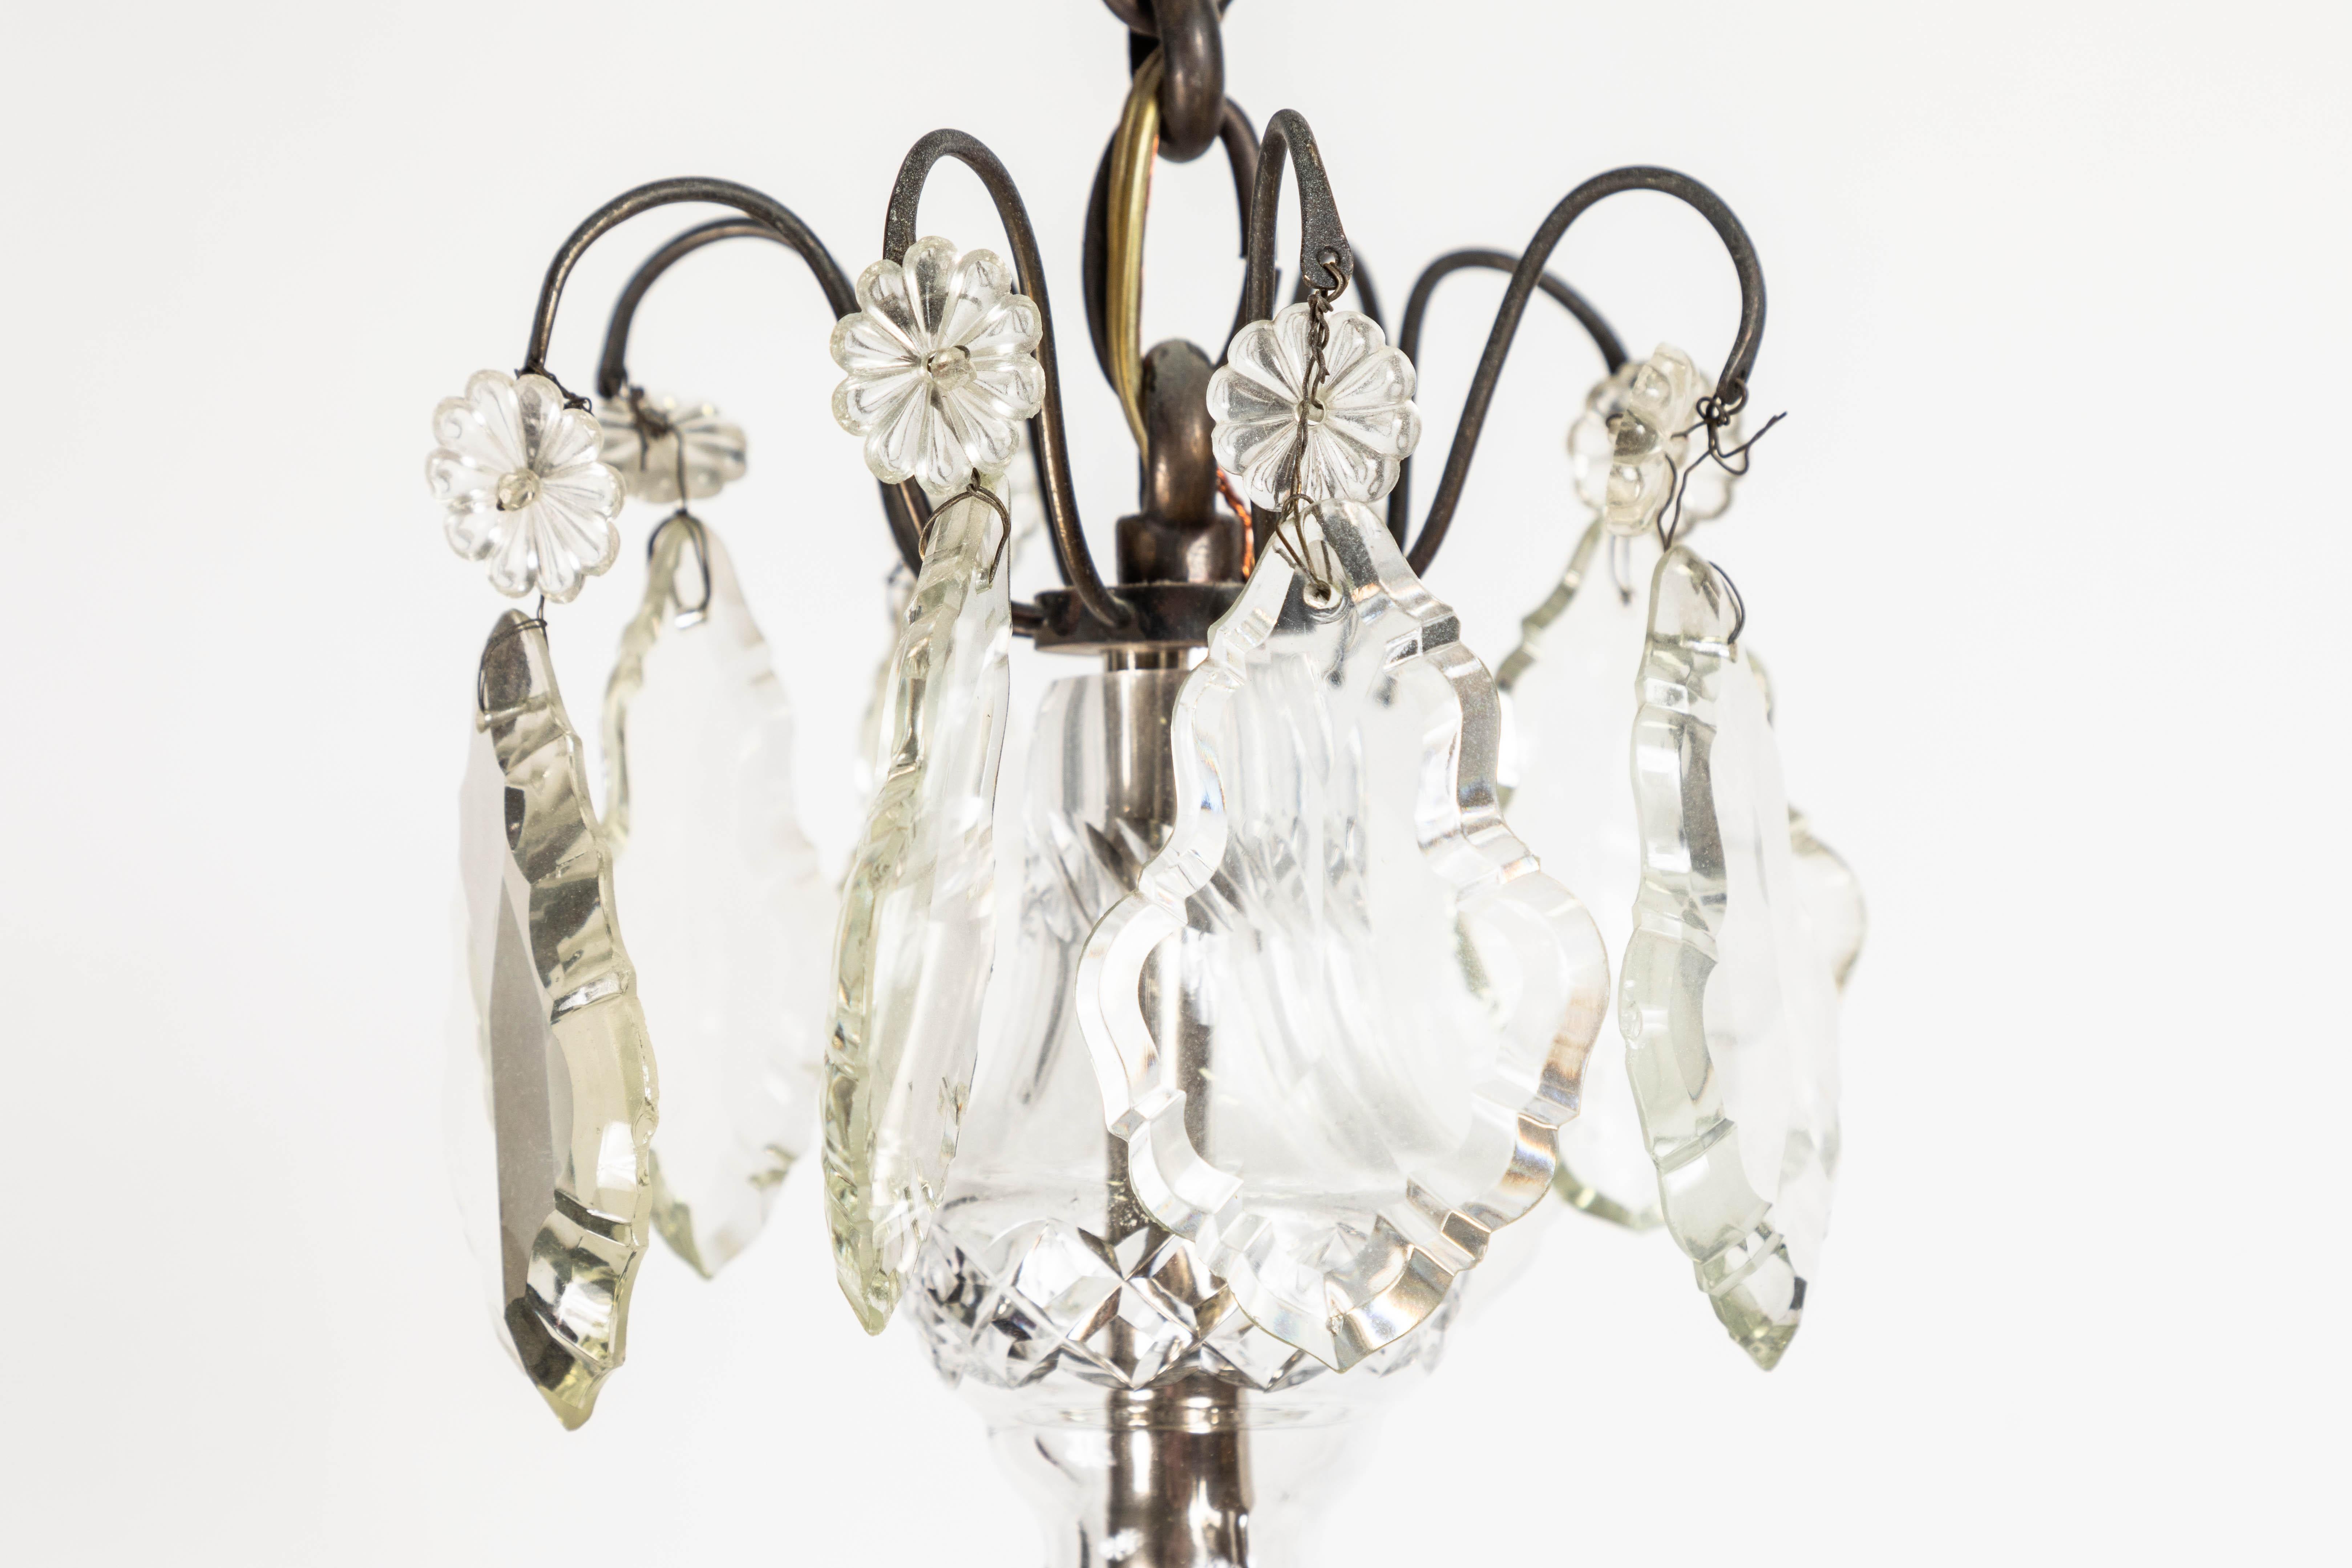 Französisch Rokoko-Stil 19. Jahrhundert Bronze 8-Licht-Kronleuchter mit handgeschliffenen Kristallen. 19